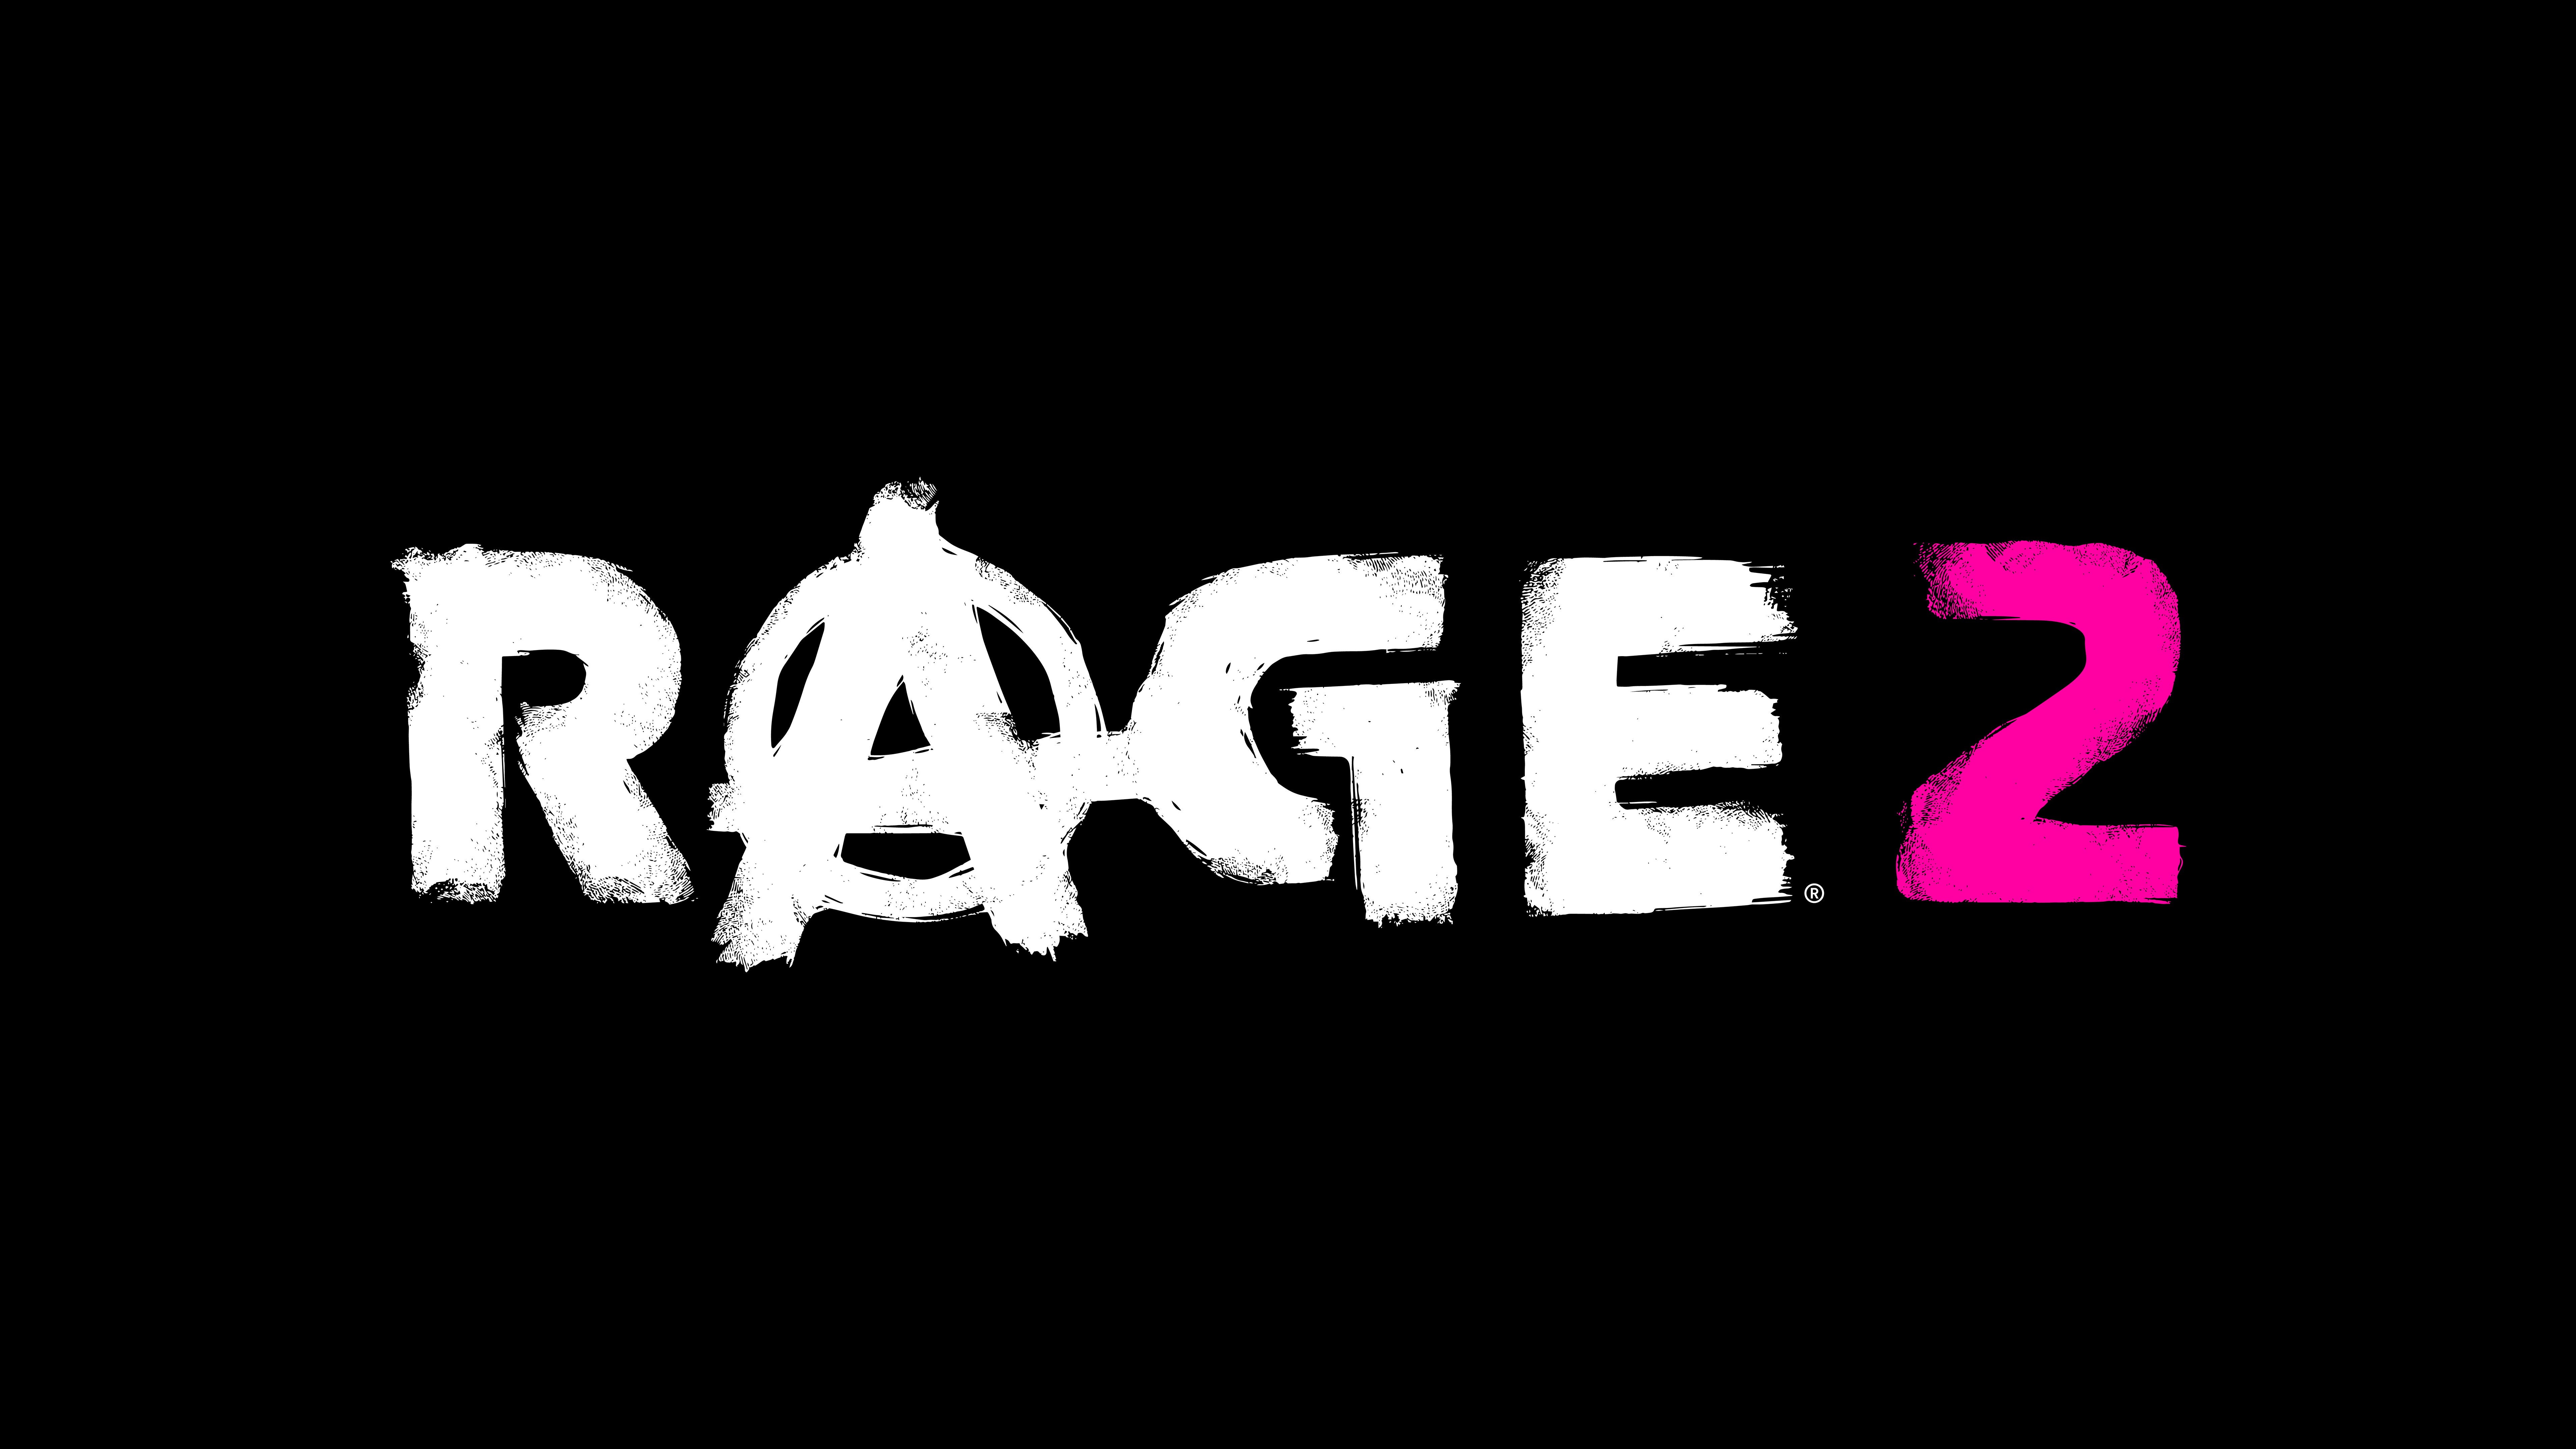 Descargar fondos de escritorio de Rage 2 HD